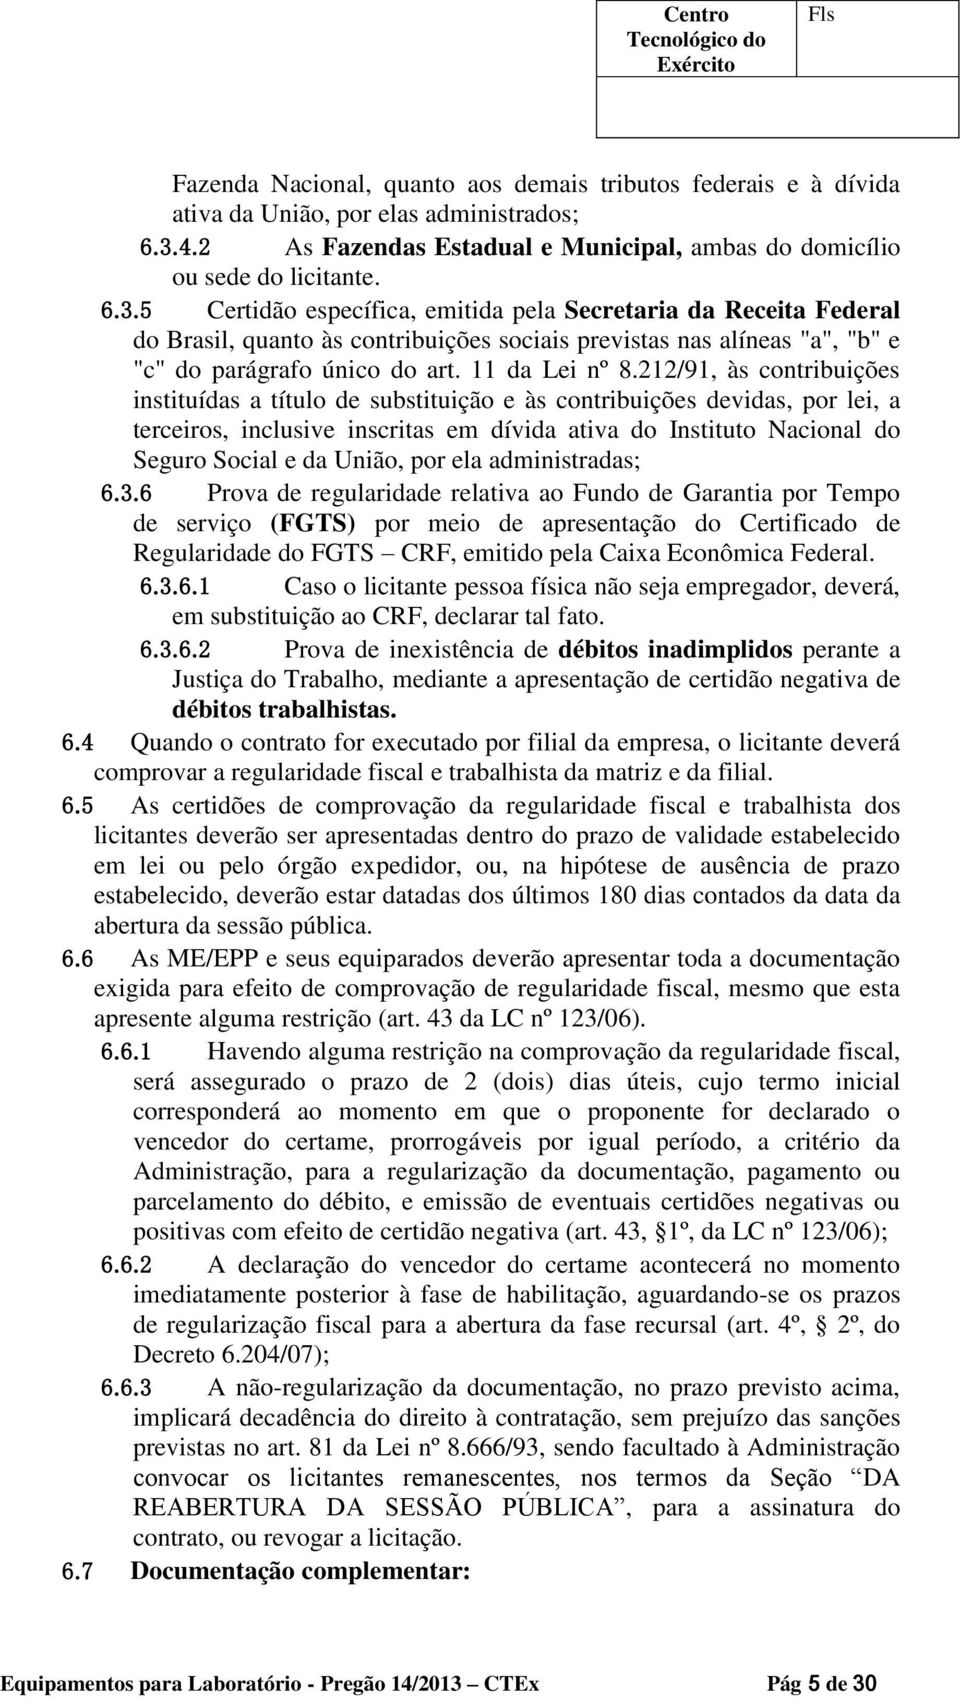 5 Certidão específica, emitida pela Secretaria da Receita Federal do Brasil, quanto às contribuições sociais previstas nas alíneas "a", "b" e "c" do parágrafo único do art. 11 da Lei nº 8.